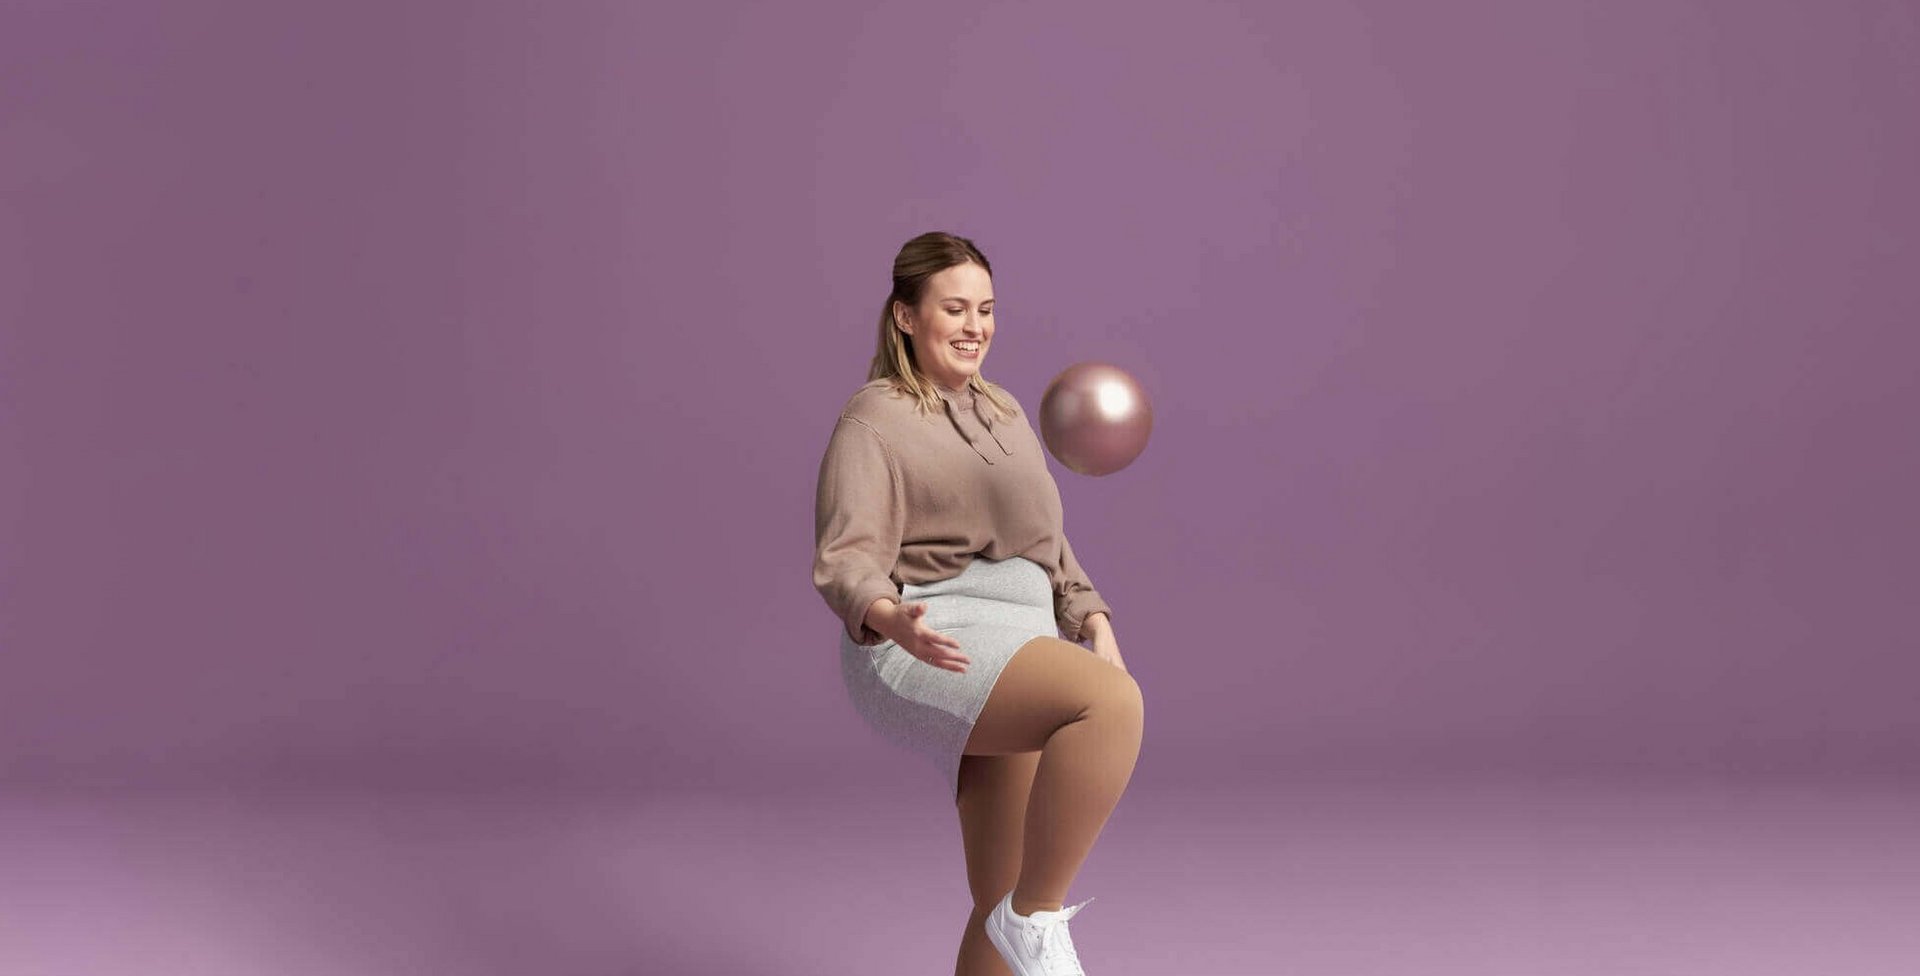 Auf dem Bild sieht man eine Frau beim Spielen mit einem Ball. An den Beinen trägt sie VenoTrain Delight Kompressionsstrümpfe.